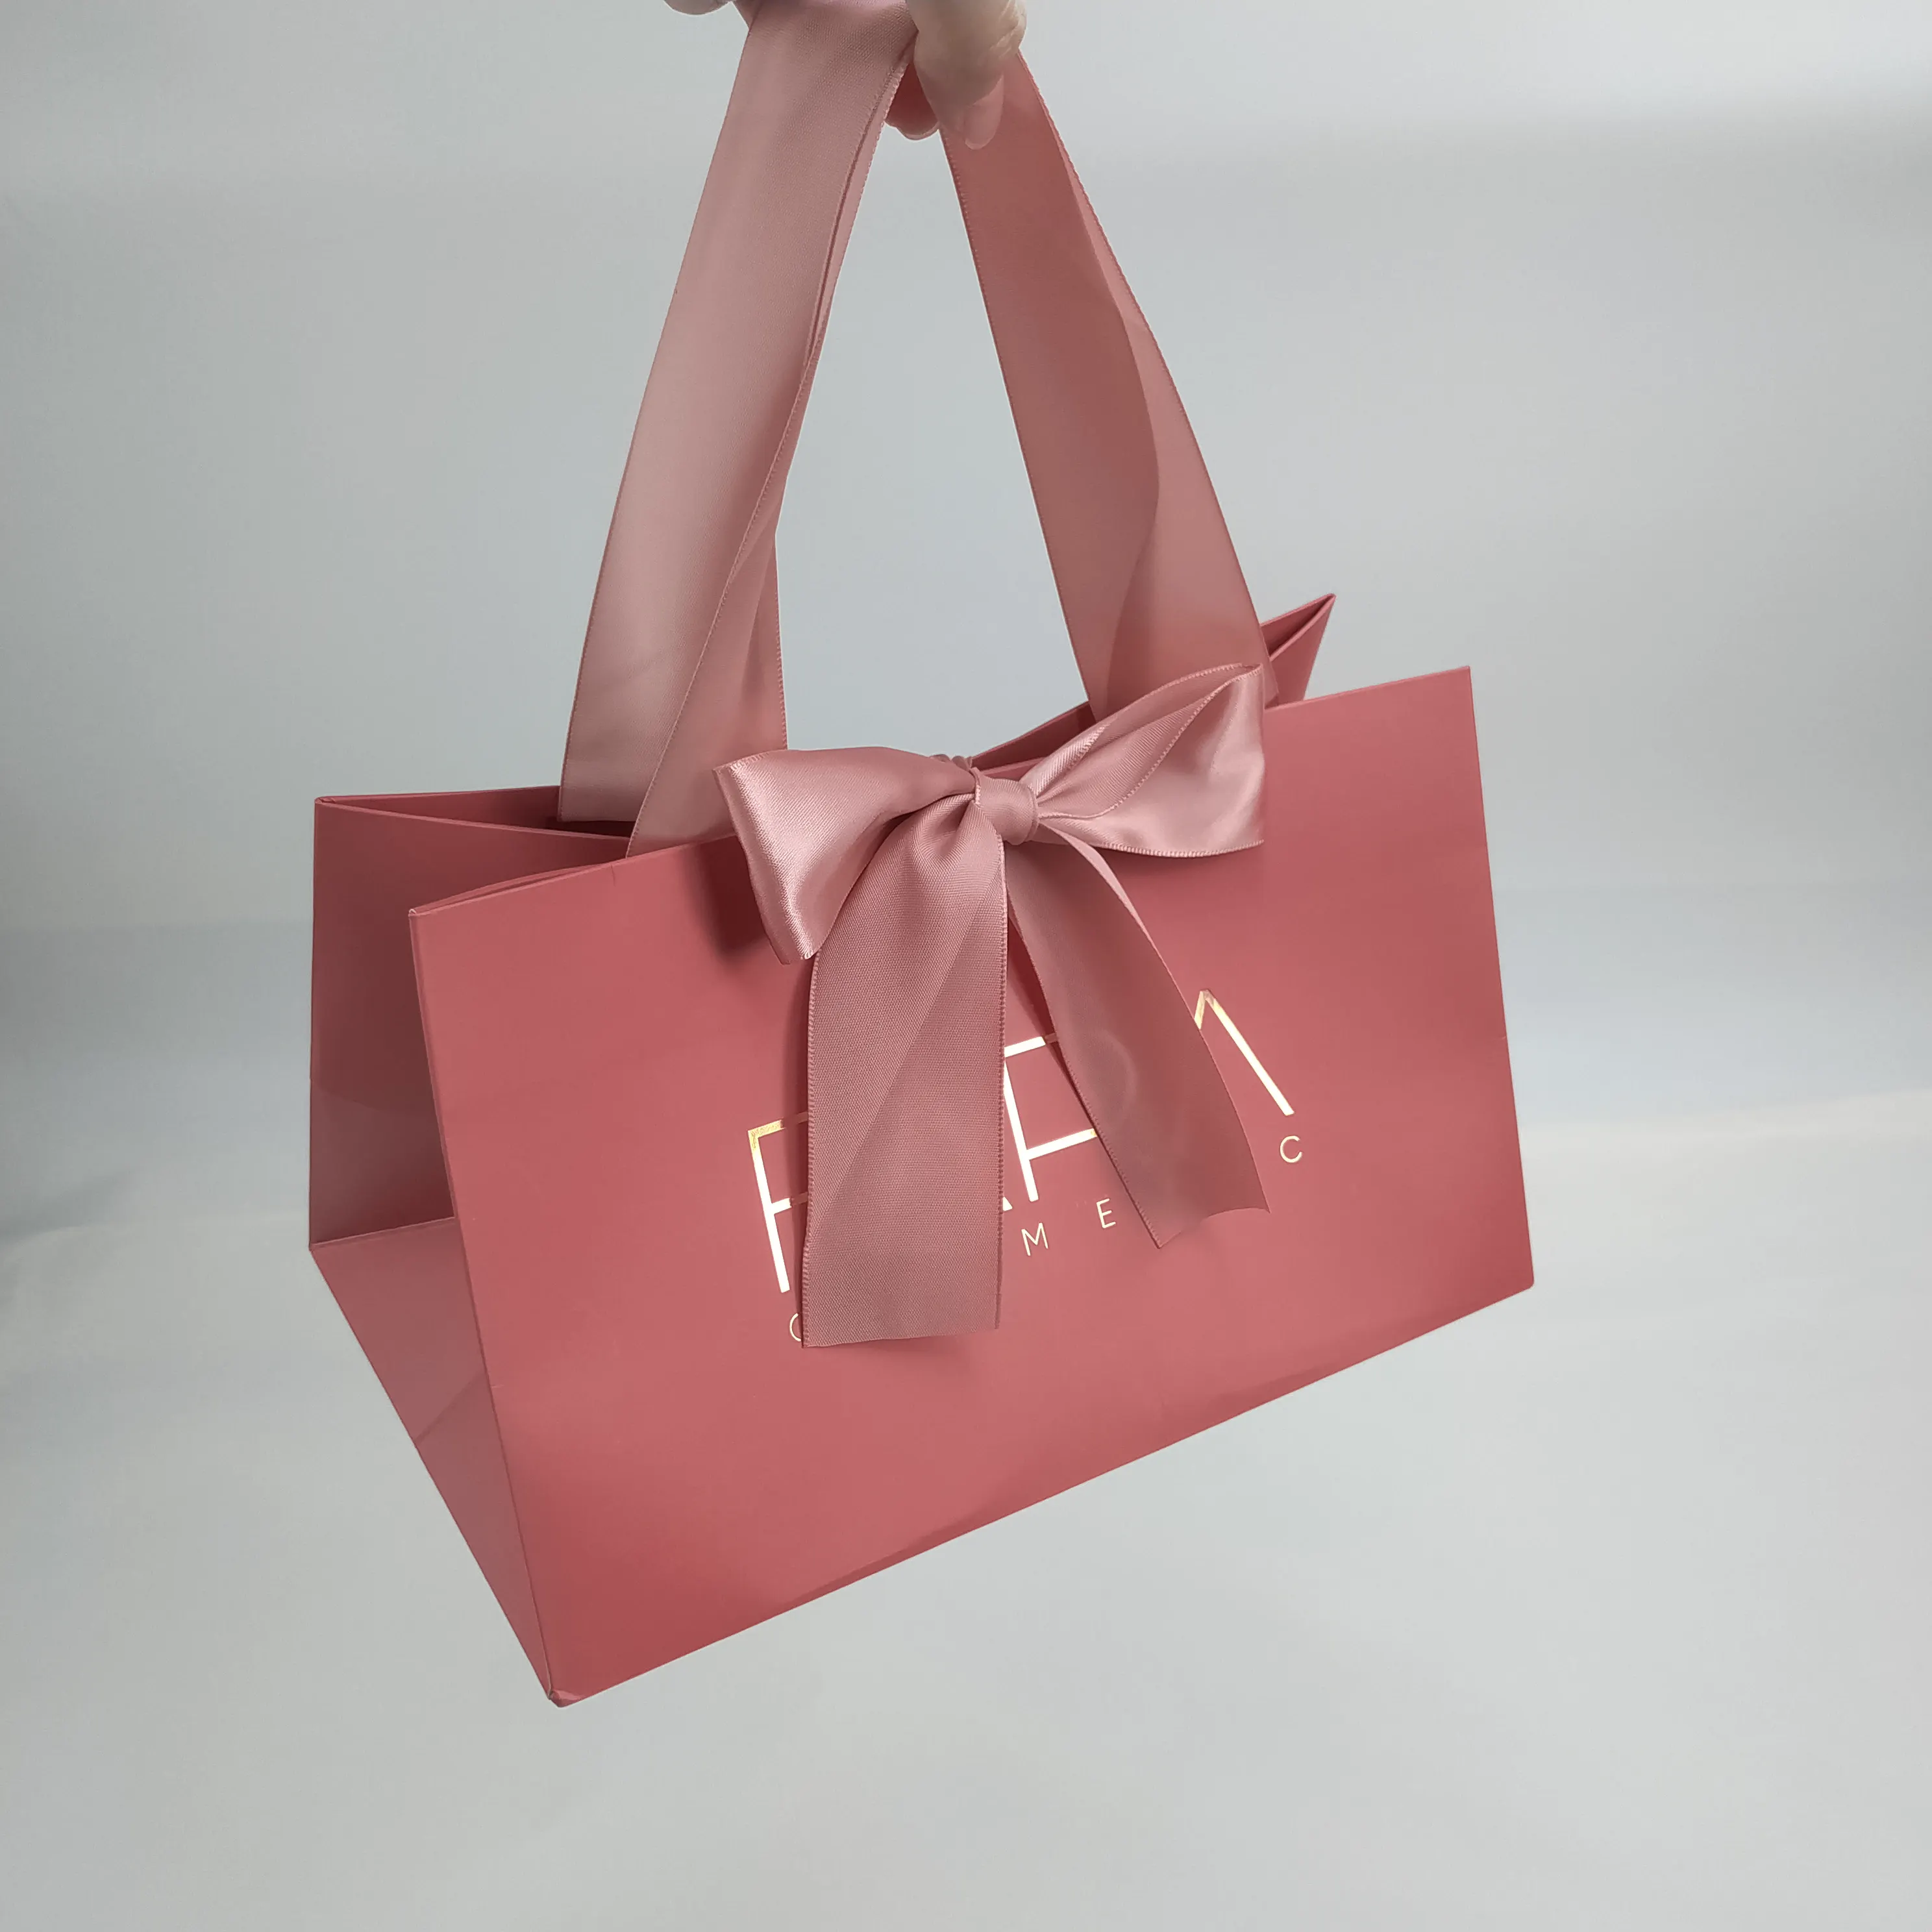 Saco de papel de embalagem de joias feito sob encomenda, embalagem de joias do logotipo impresso com fita alças, folha de ouro rosa saco de papel de presente